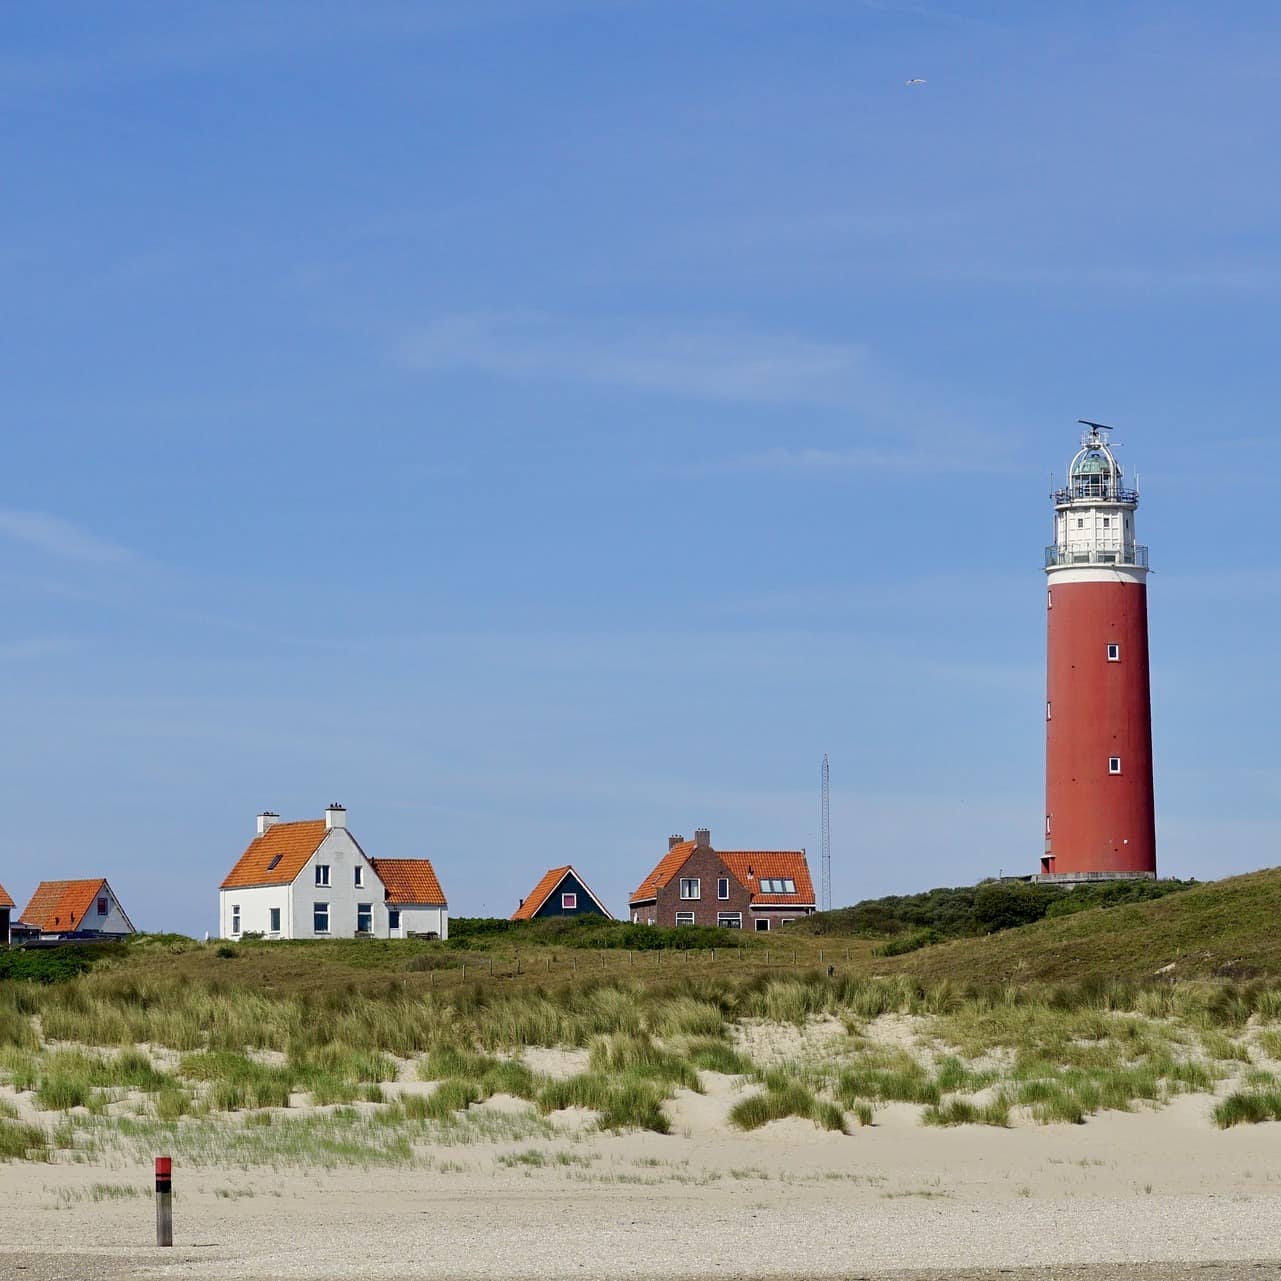 Blick vom Strand auf mehrere Häuser und einen Leuchtturm auf Texel